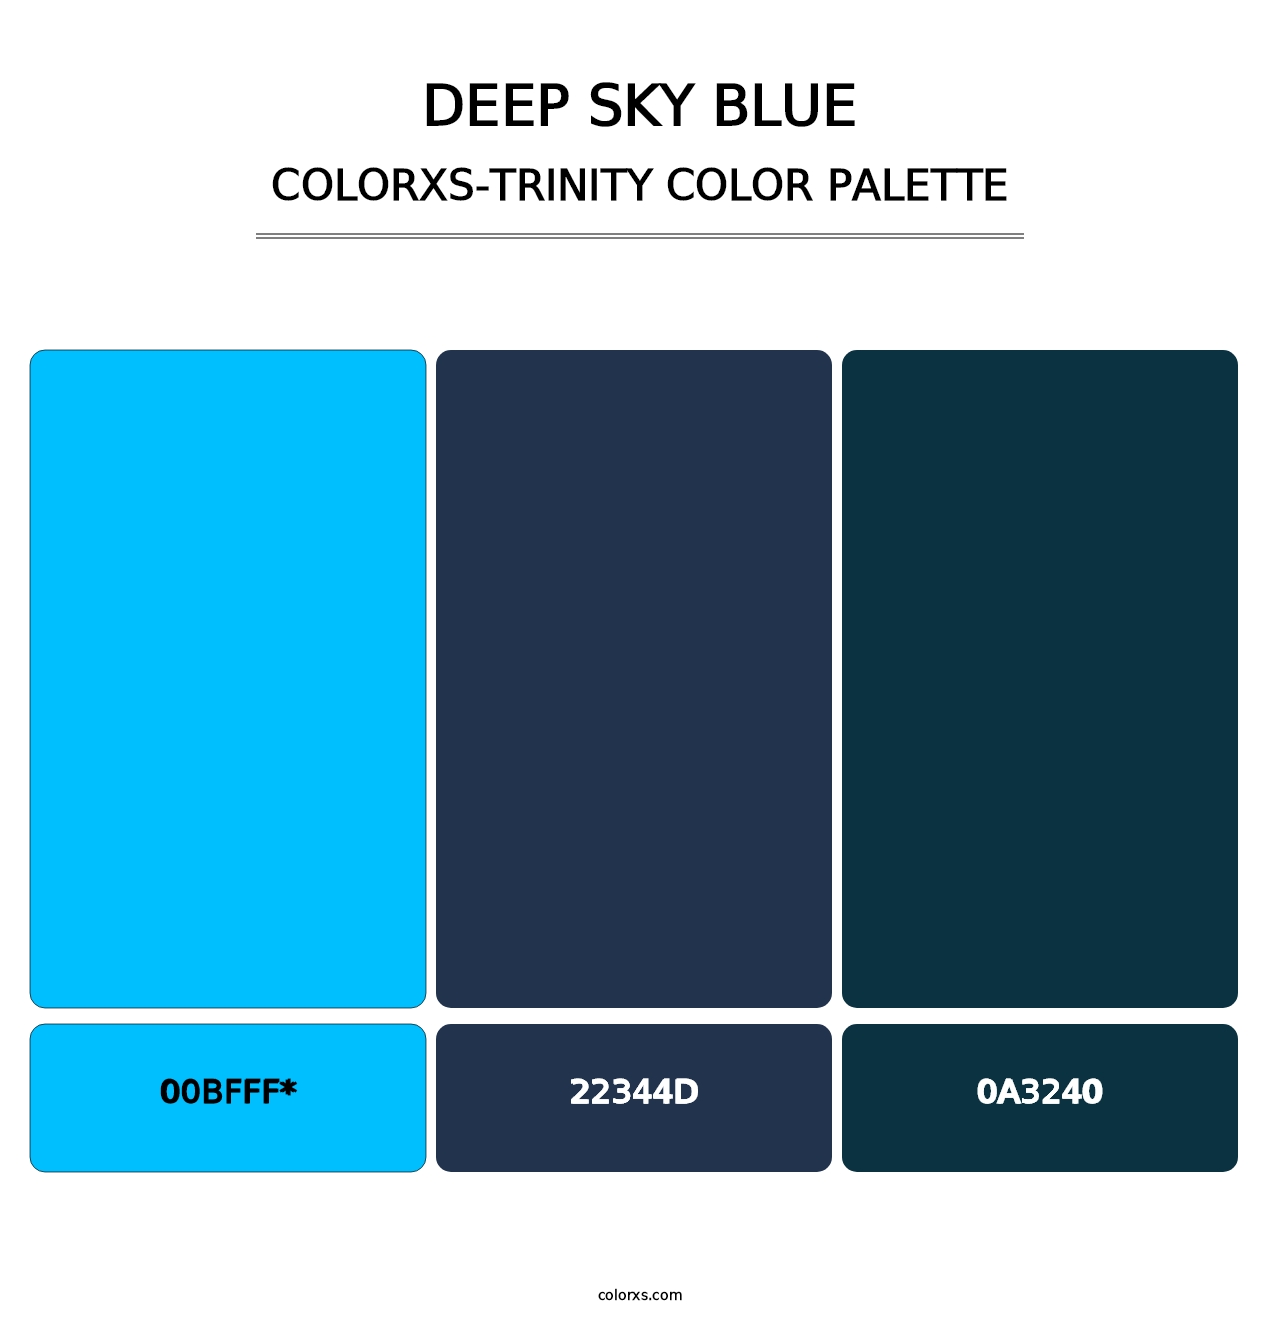 Deep Sky Blue - Colorxs Trinity Palette